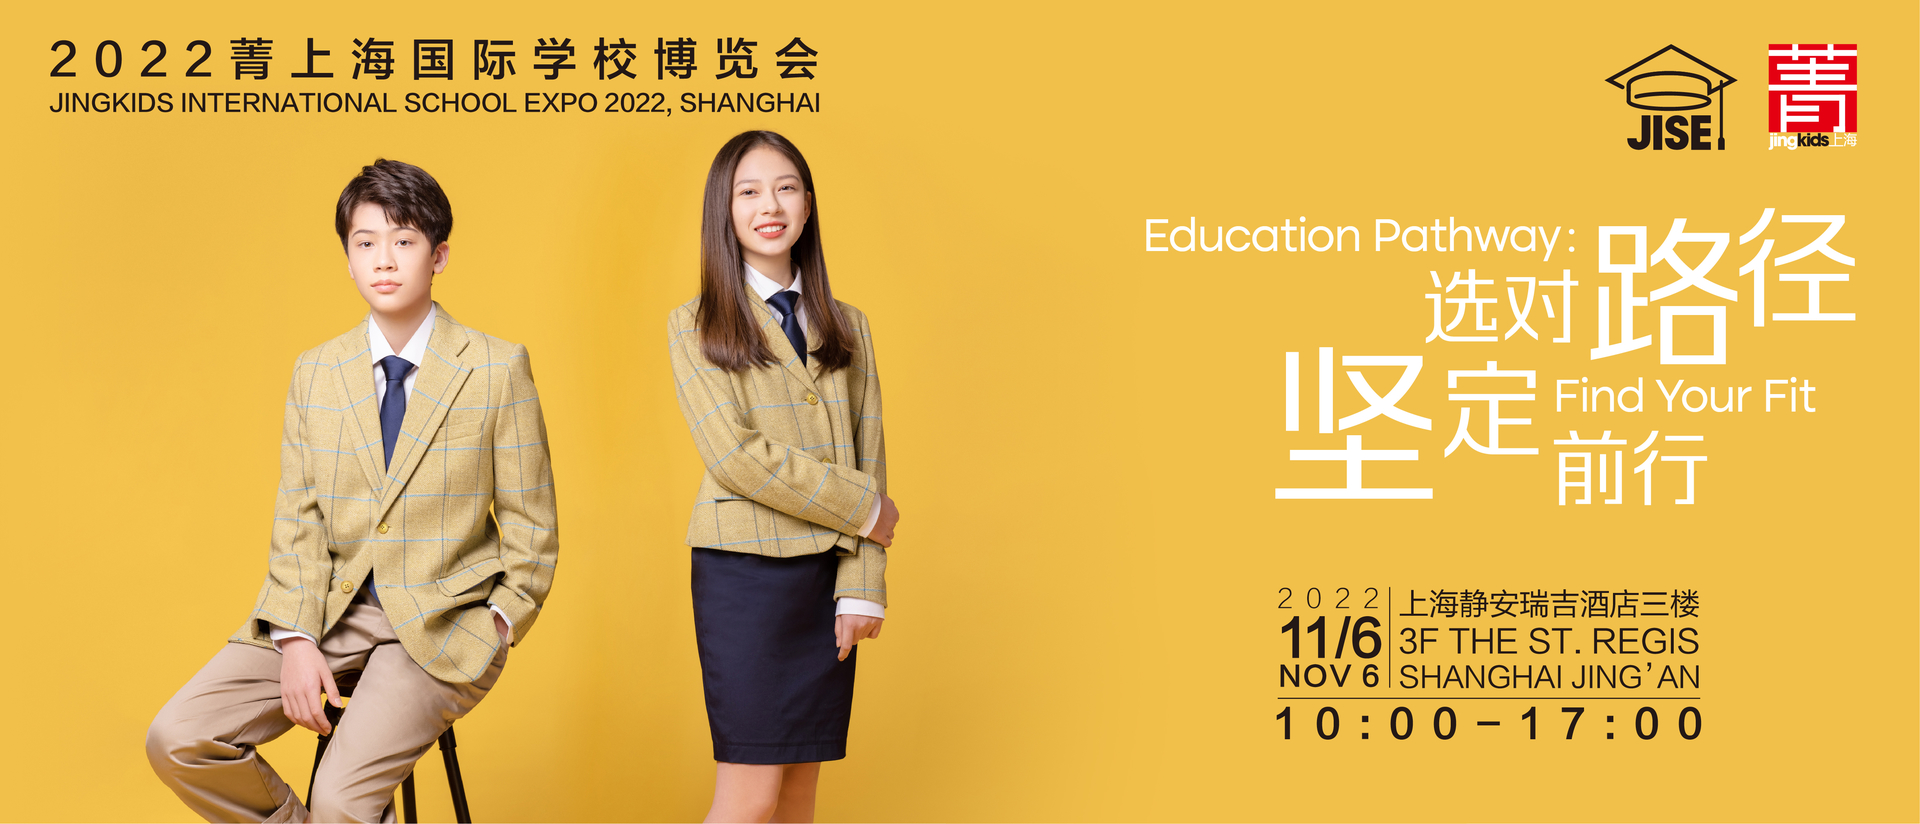 2022菁上海国际学校博览会